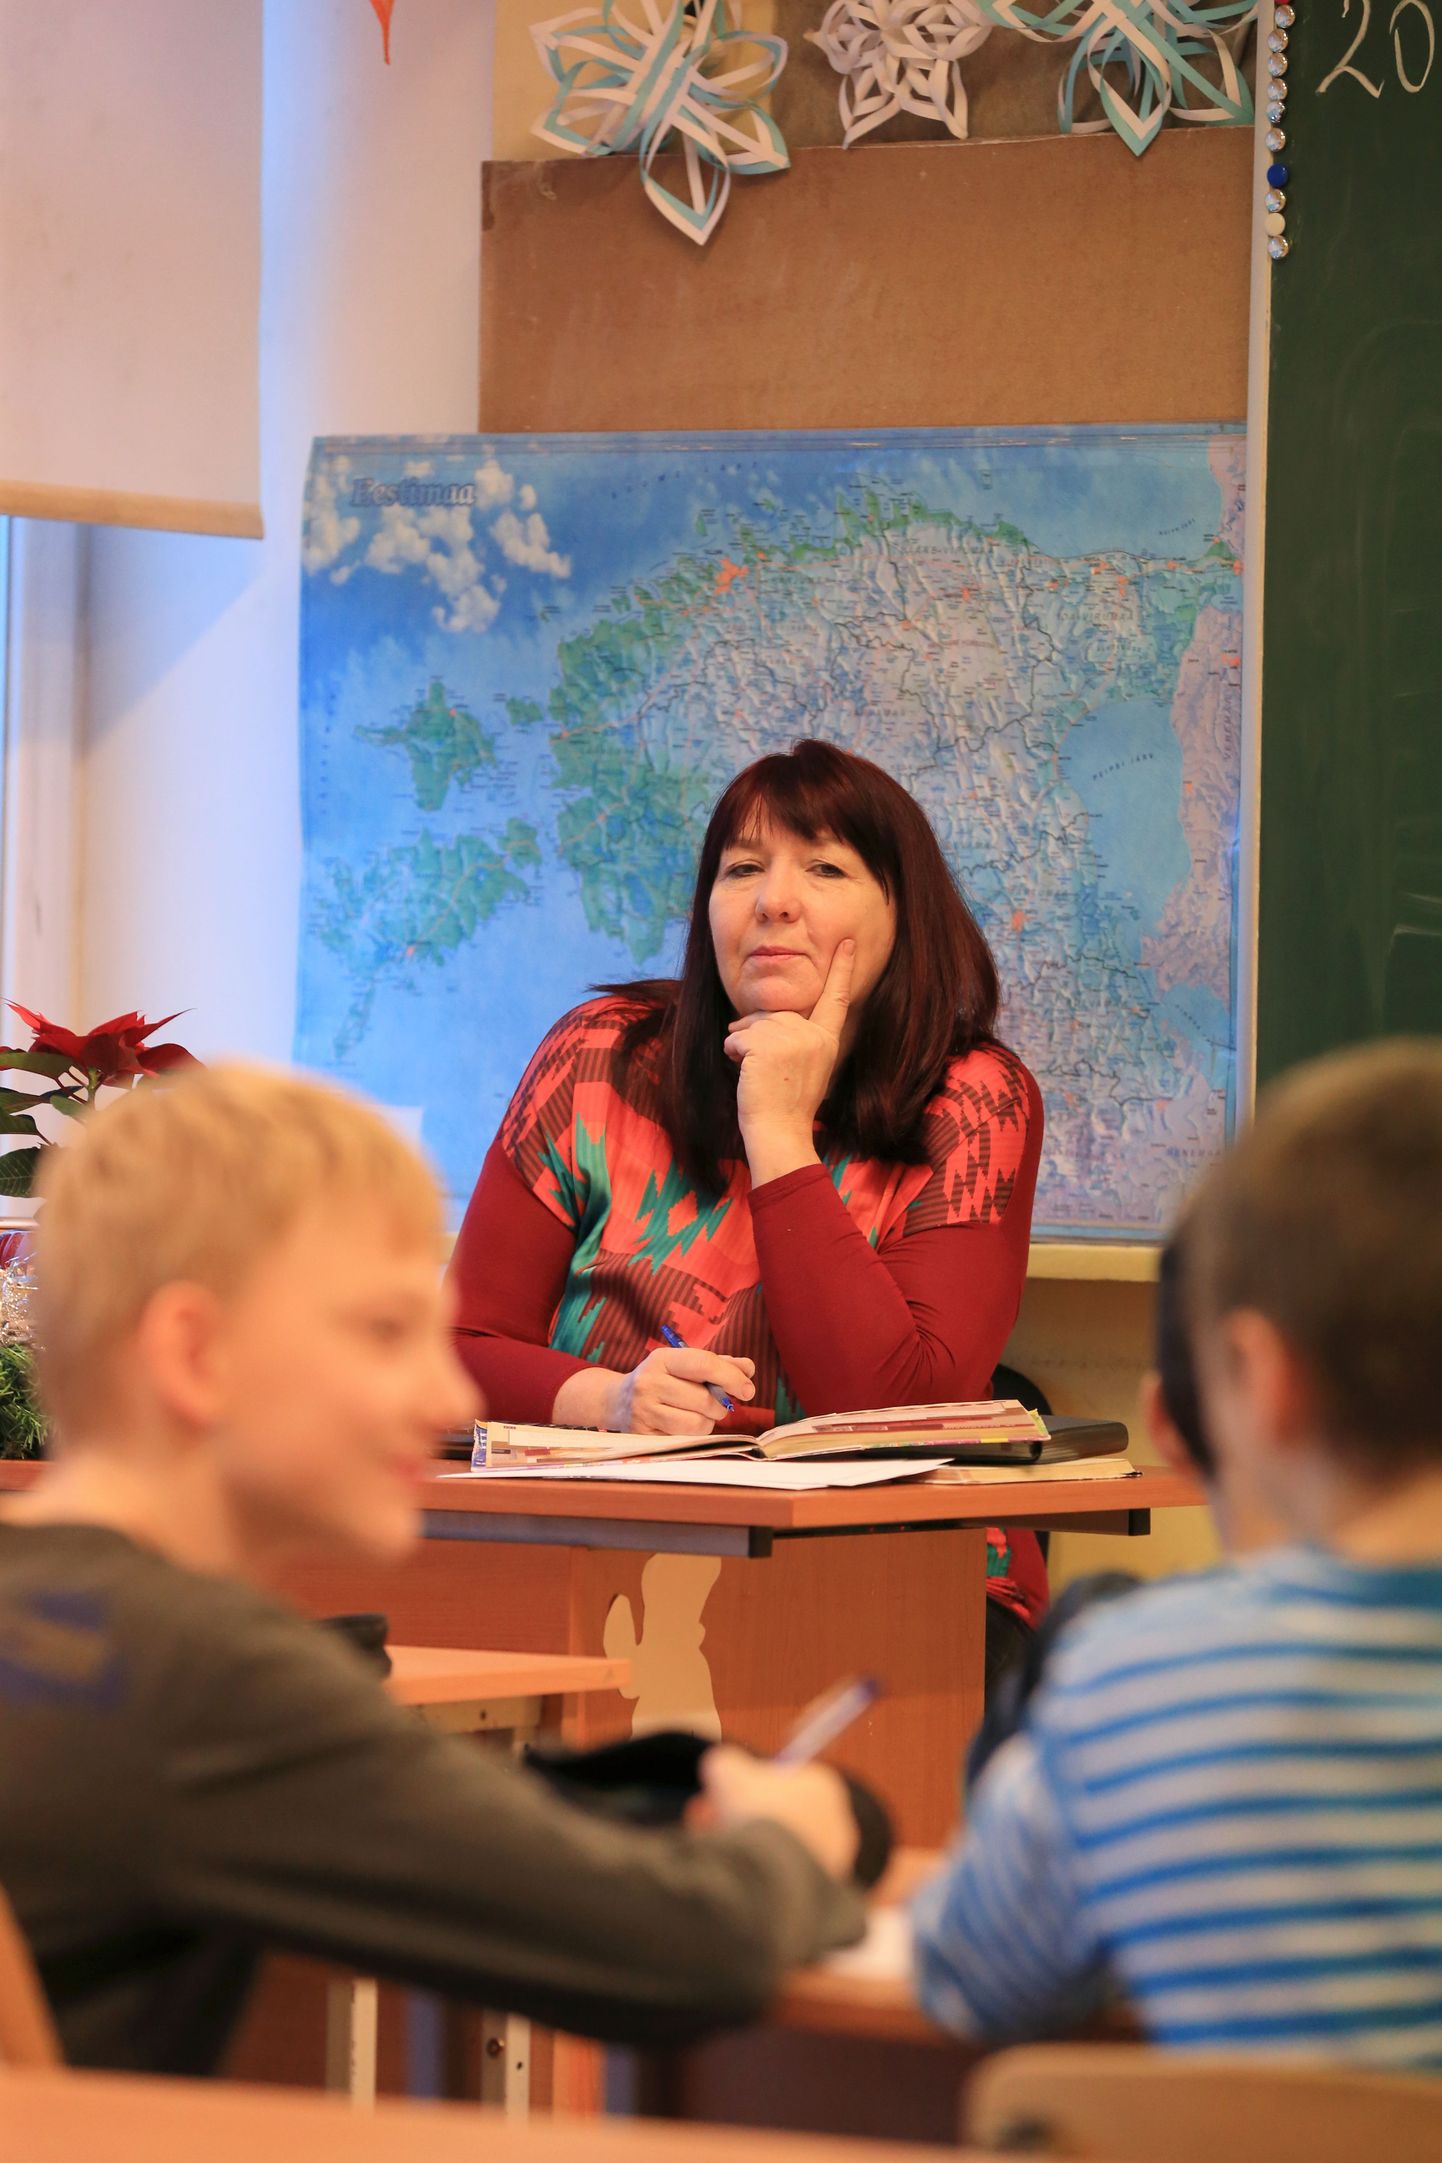 Variku kooli klassiõpetaja Maire Kiidron näeb ja leiab oma õpilastes üles pigem head ning usub, et nii kodus kui koolis on kõige tähtsamad suhted. Oma praegusi õpilasi vaadates kujutab ta juba ette, kui särav tulevik neid ootab.